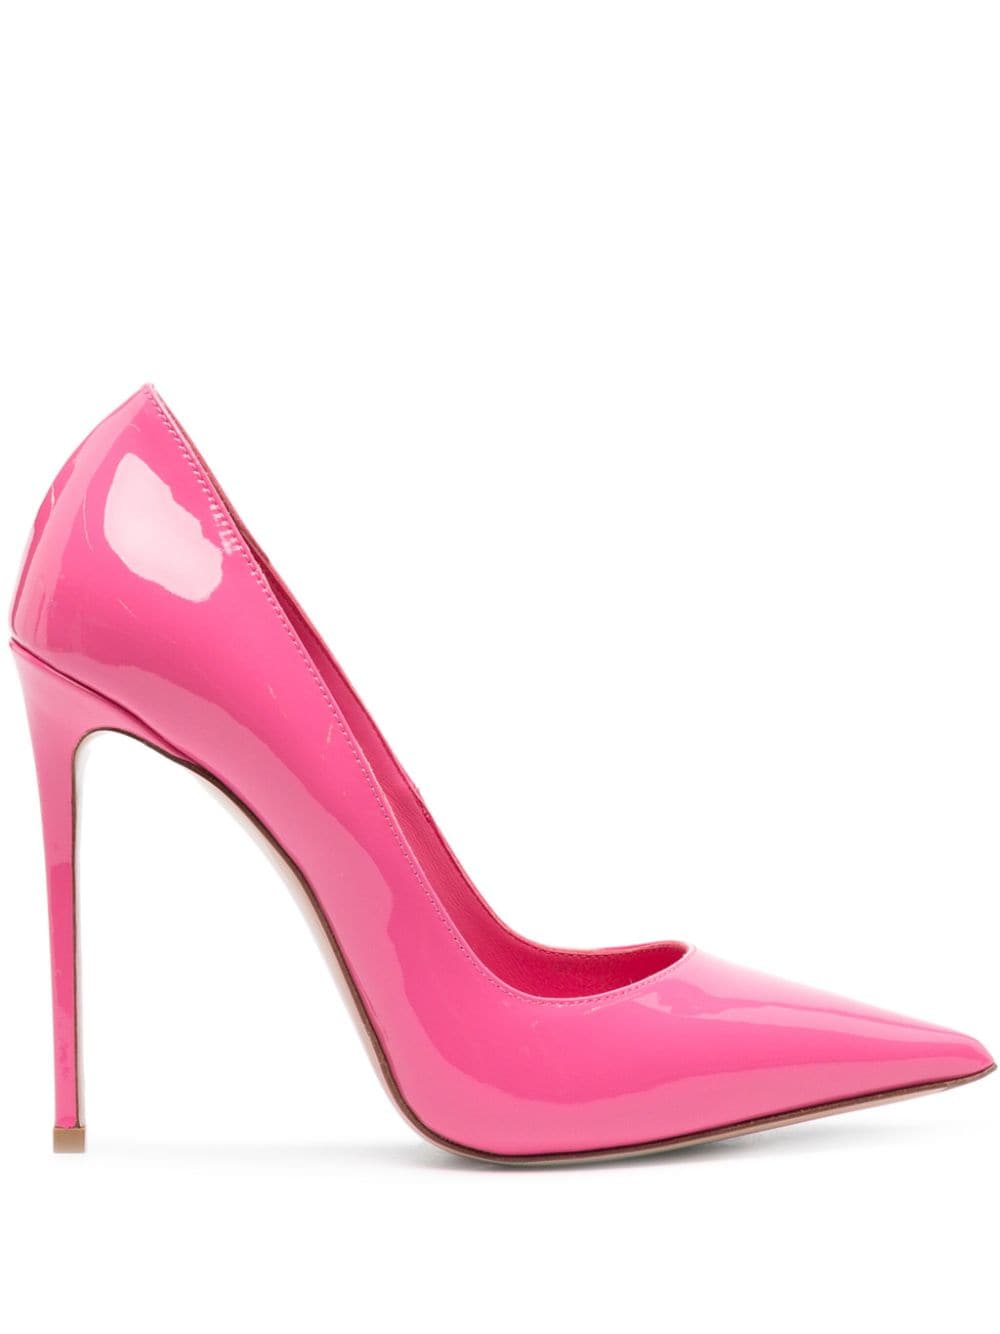 Le Silla Eva 120mm leather pumps - Pink von Le Silla